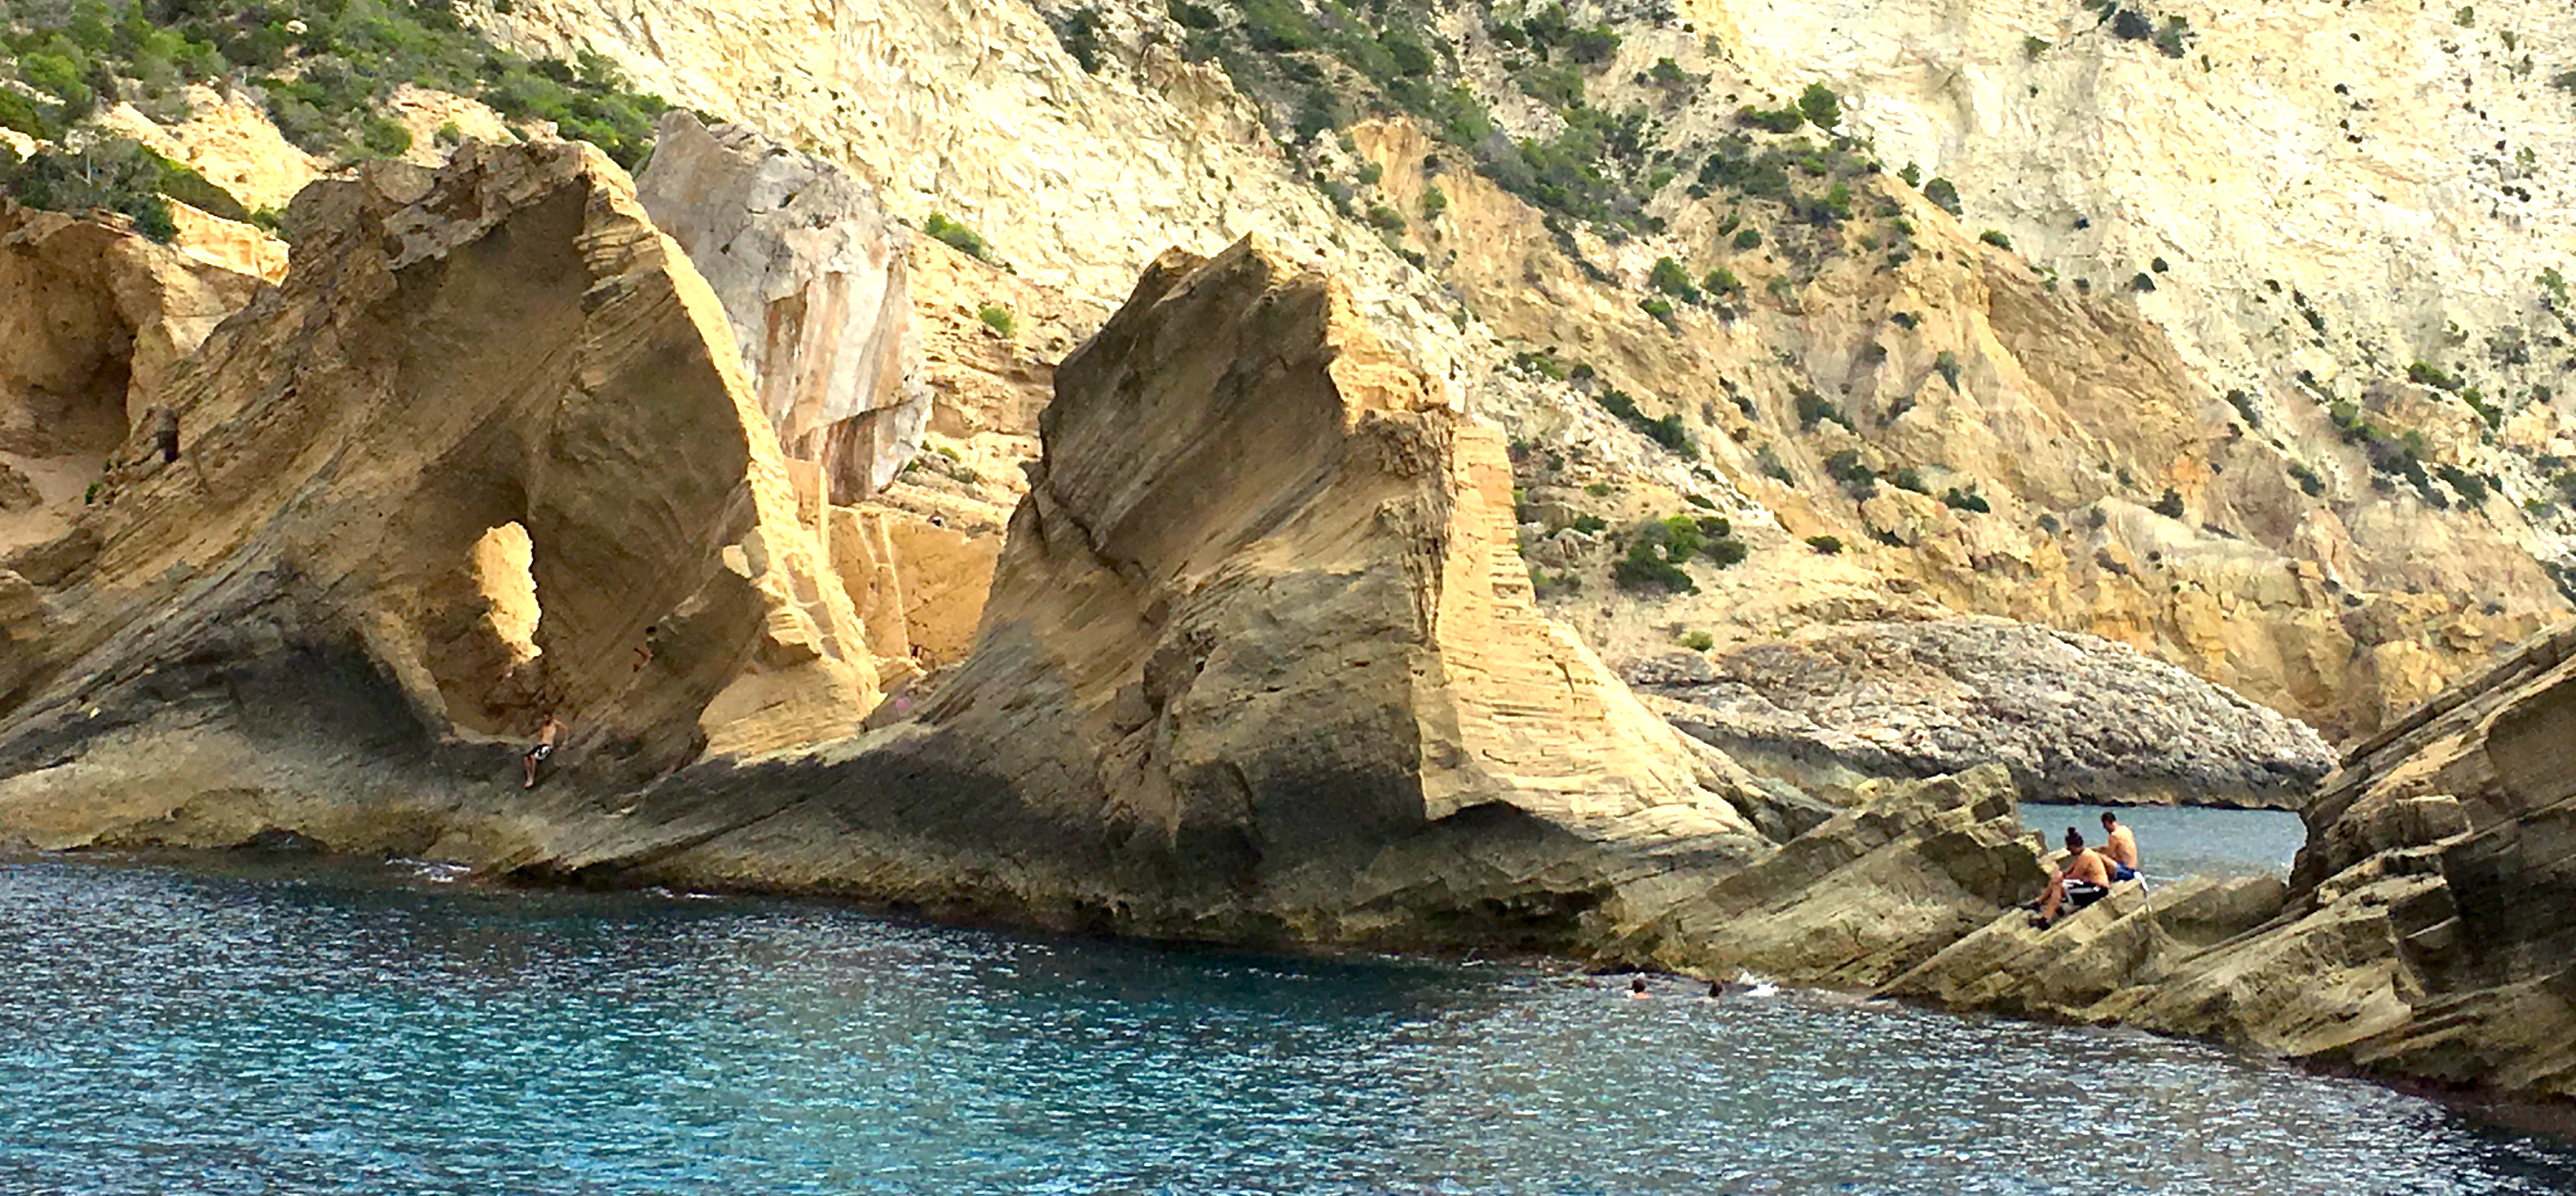 Alquila un catamaran en Ibiza